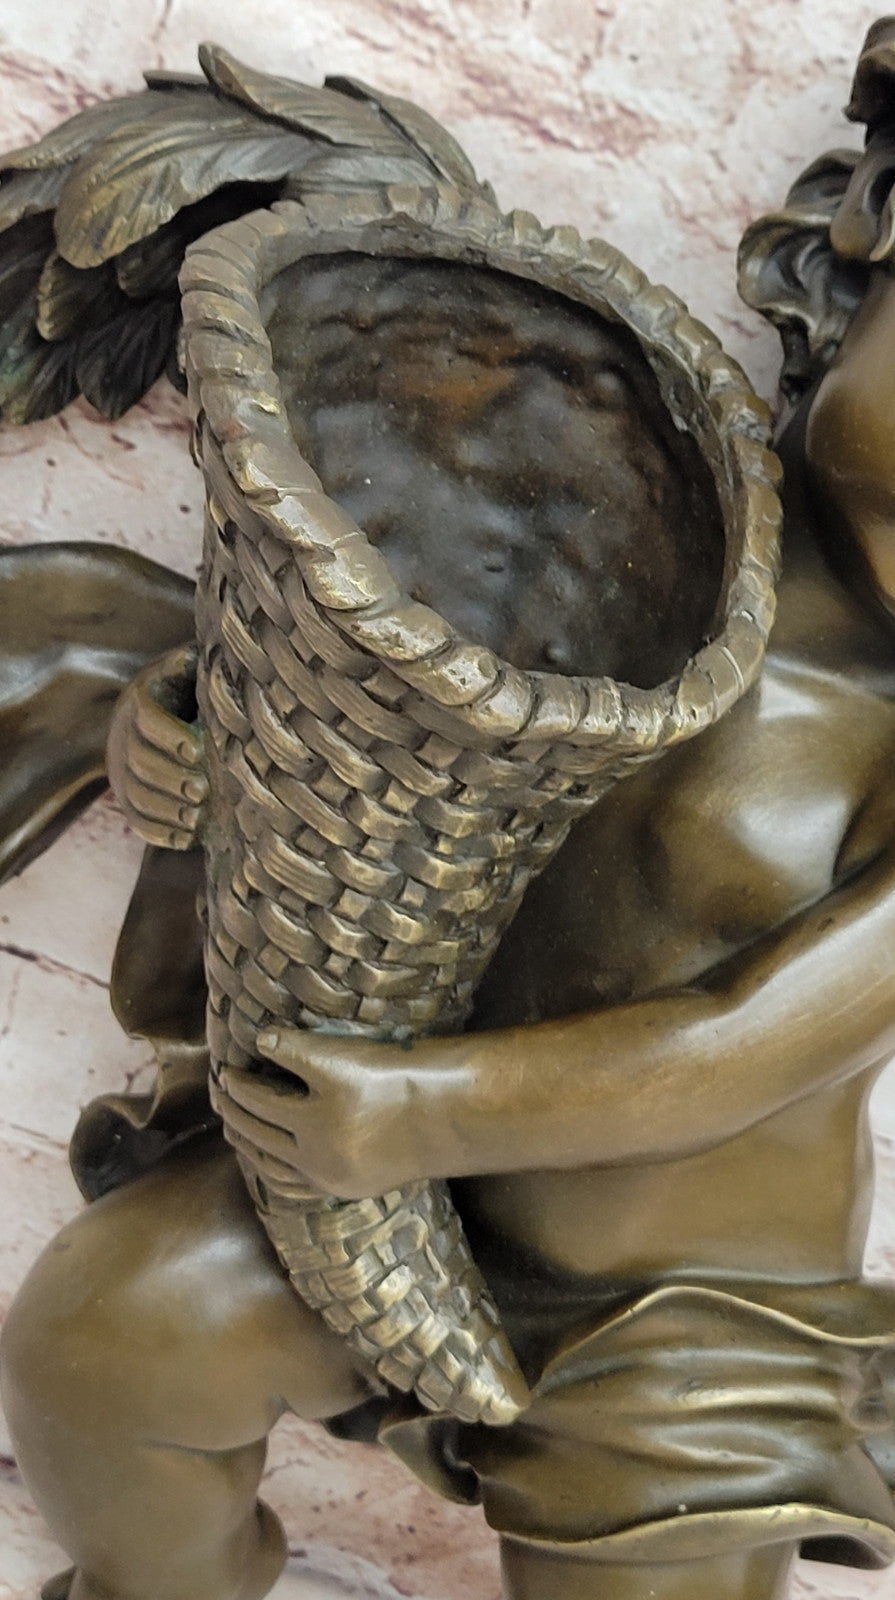 Vintage Baby Boy Angel Putti Bronze Statue Home Decor Gift